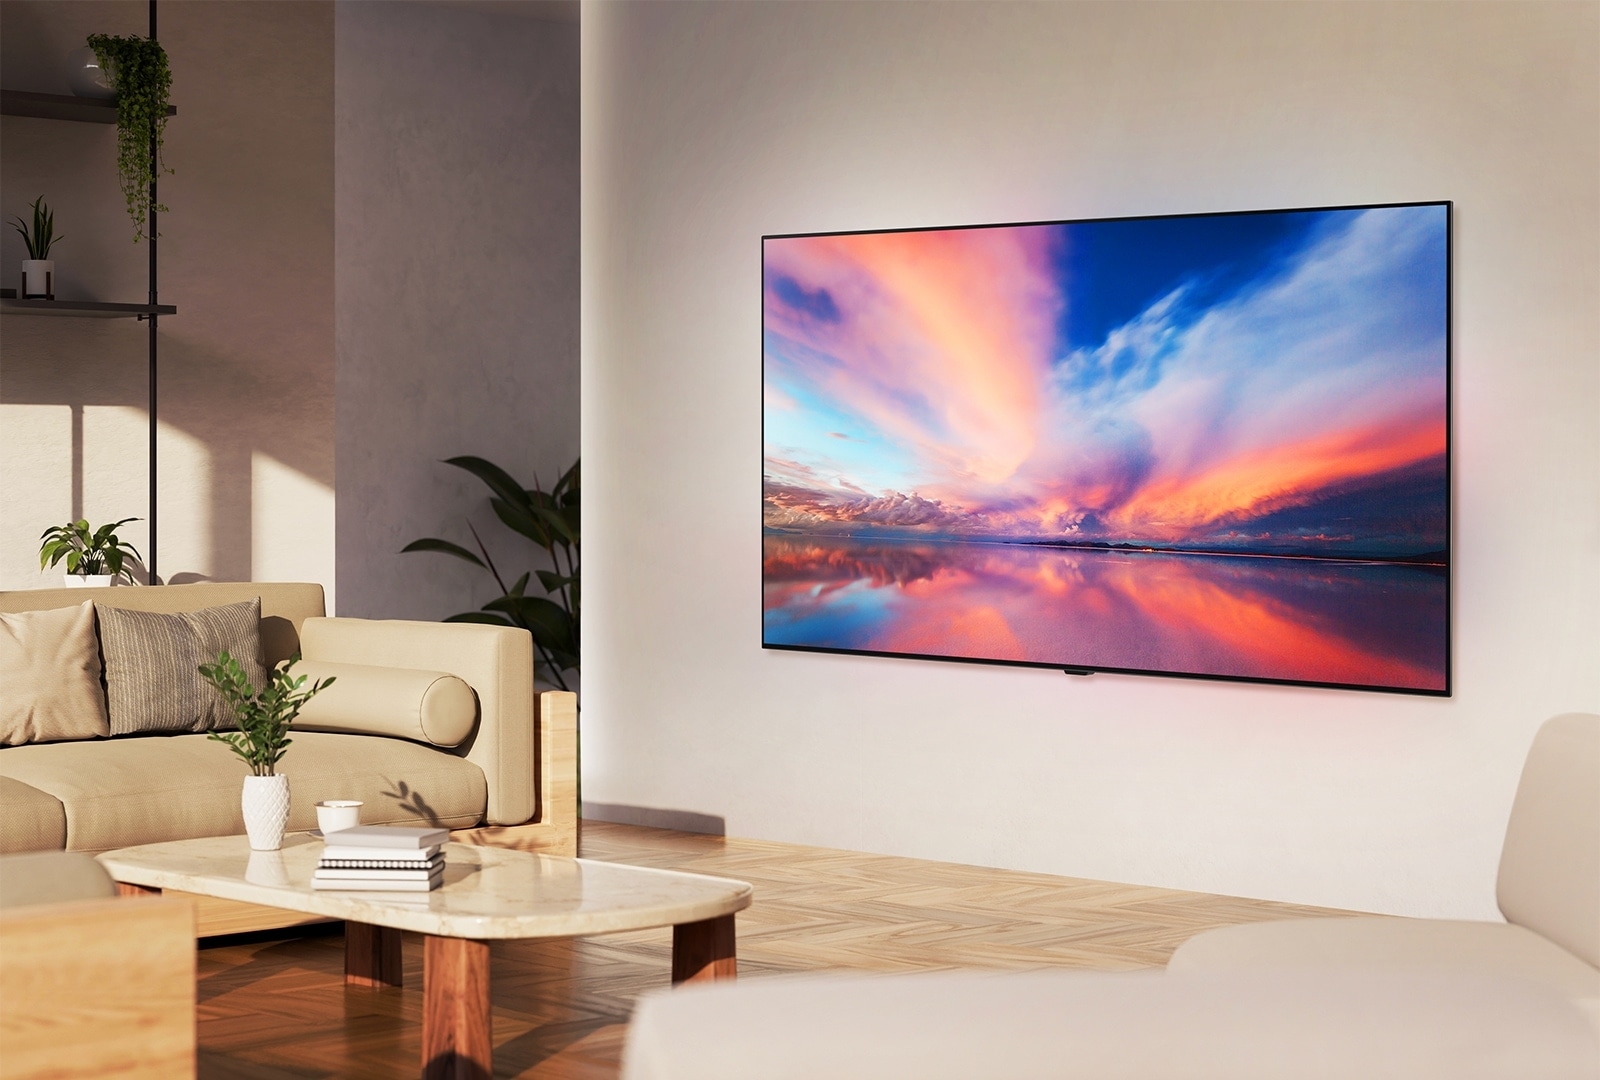 Телевизор LG OLED TV, OLED B4 на стене нейтрального жилого пространства, на экране которого демонстрируется красочная фотография заката над океаном. 